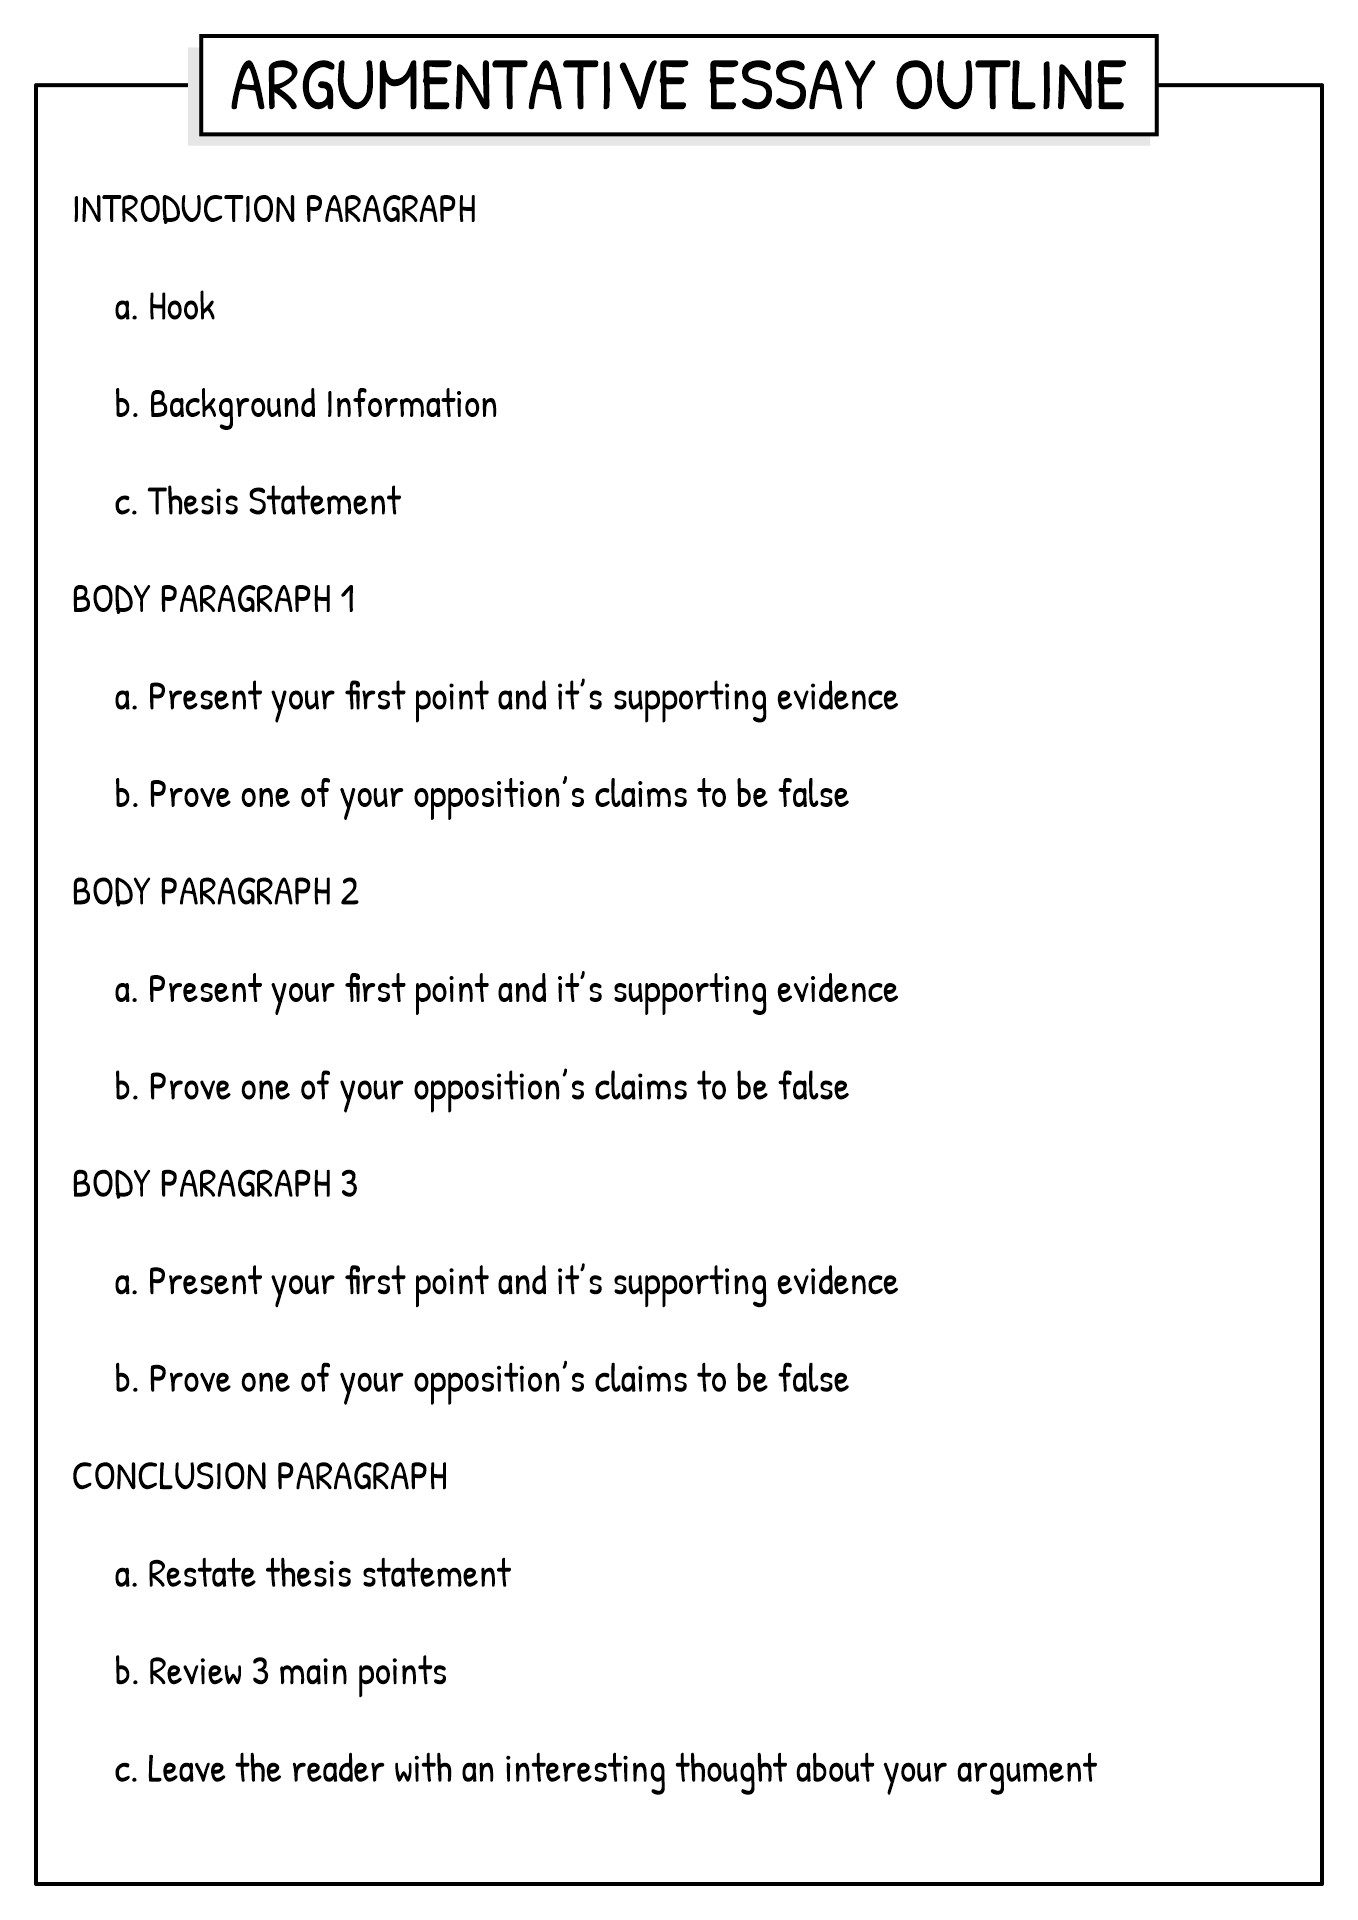 argumentative essay outline worksheet pdf